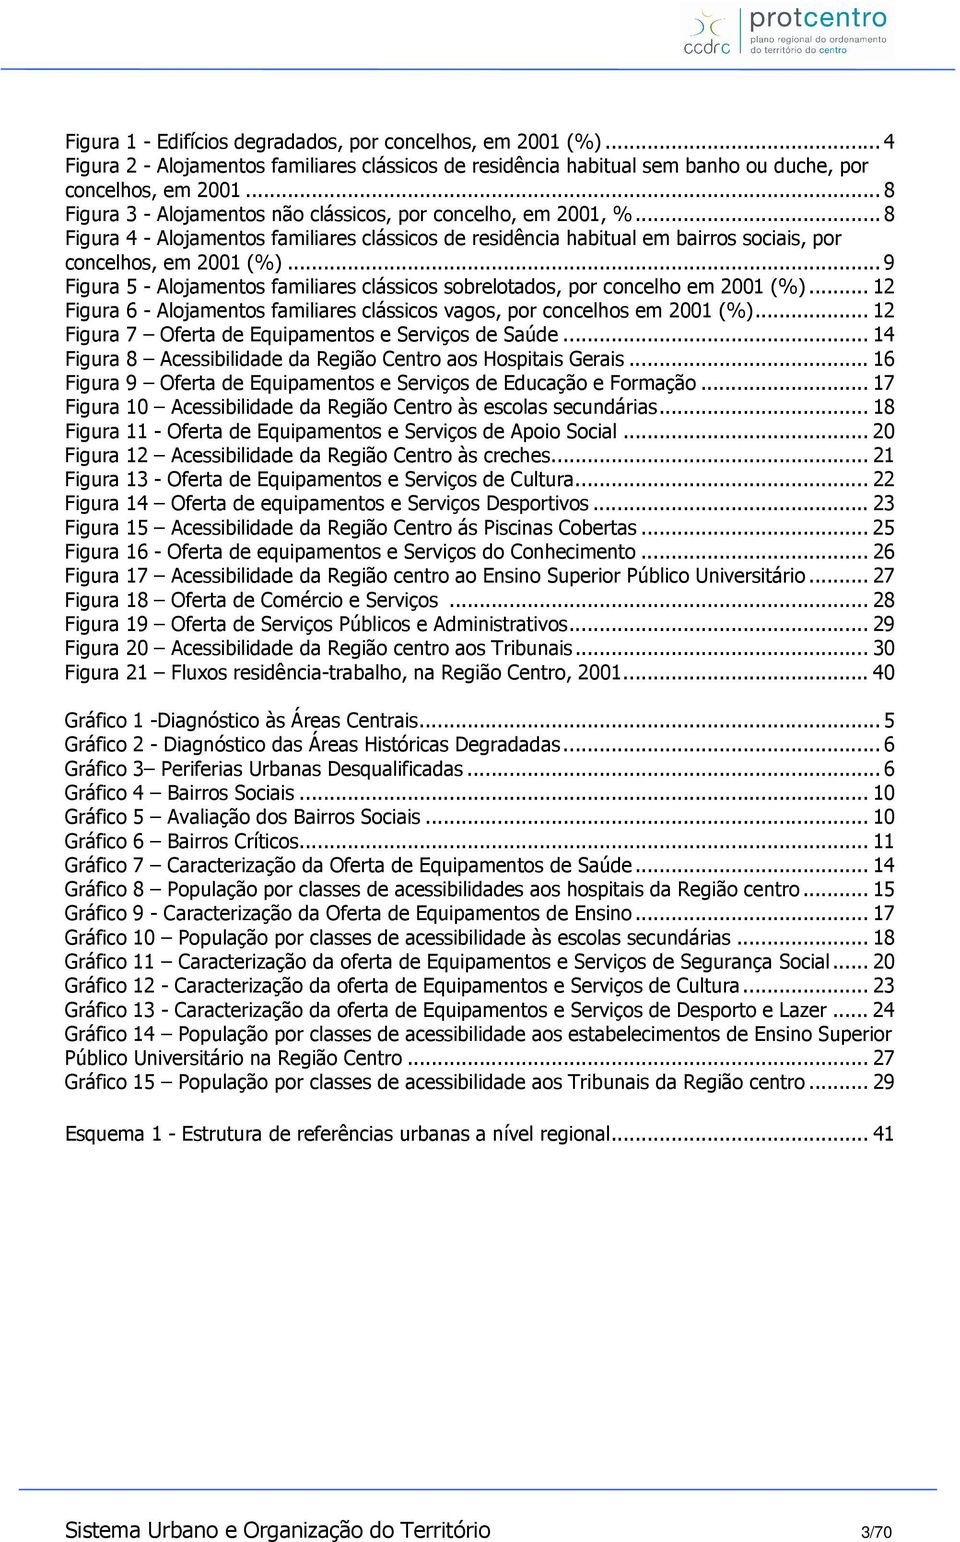 .. 9 Figura 5 - Alojamentos familiares clássicos sobrelotados, por concelho em 2001 (%)... 12 Figura 6 - Alojamentos familiares clássicos vagos, por concelhos em 2001 (%).